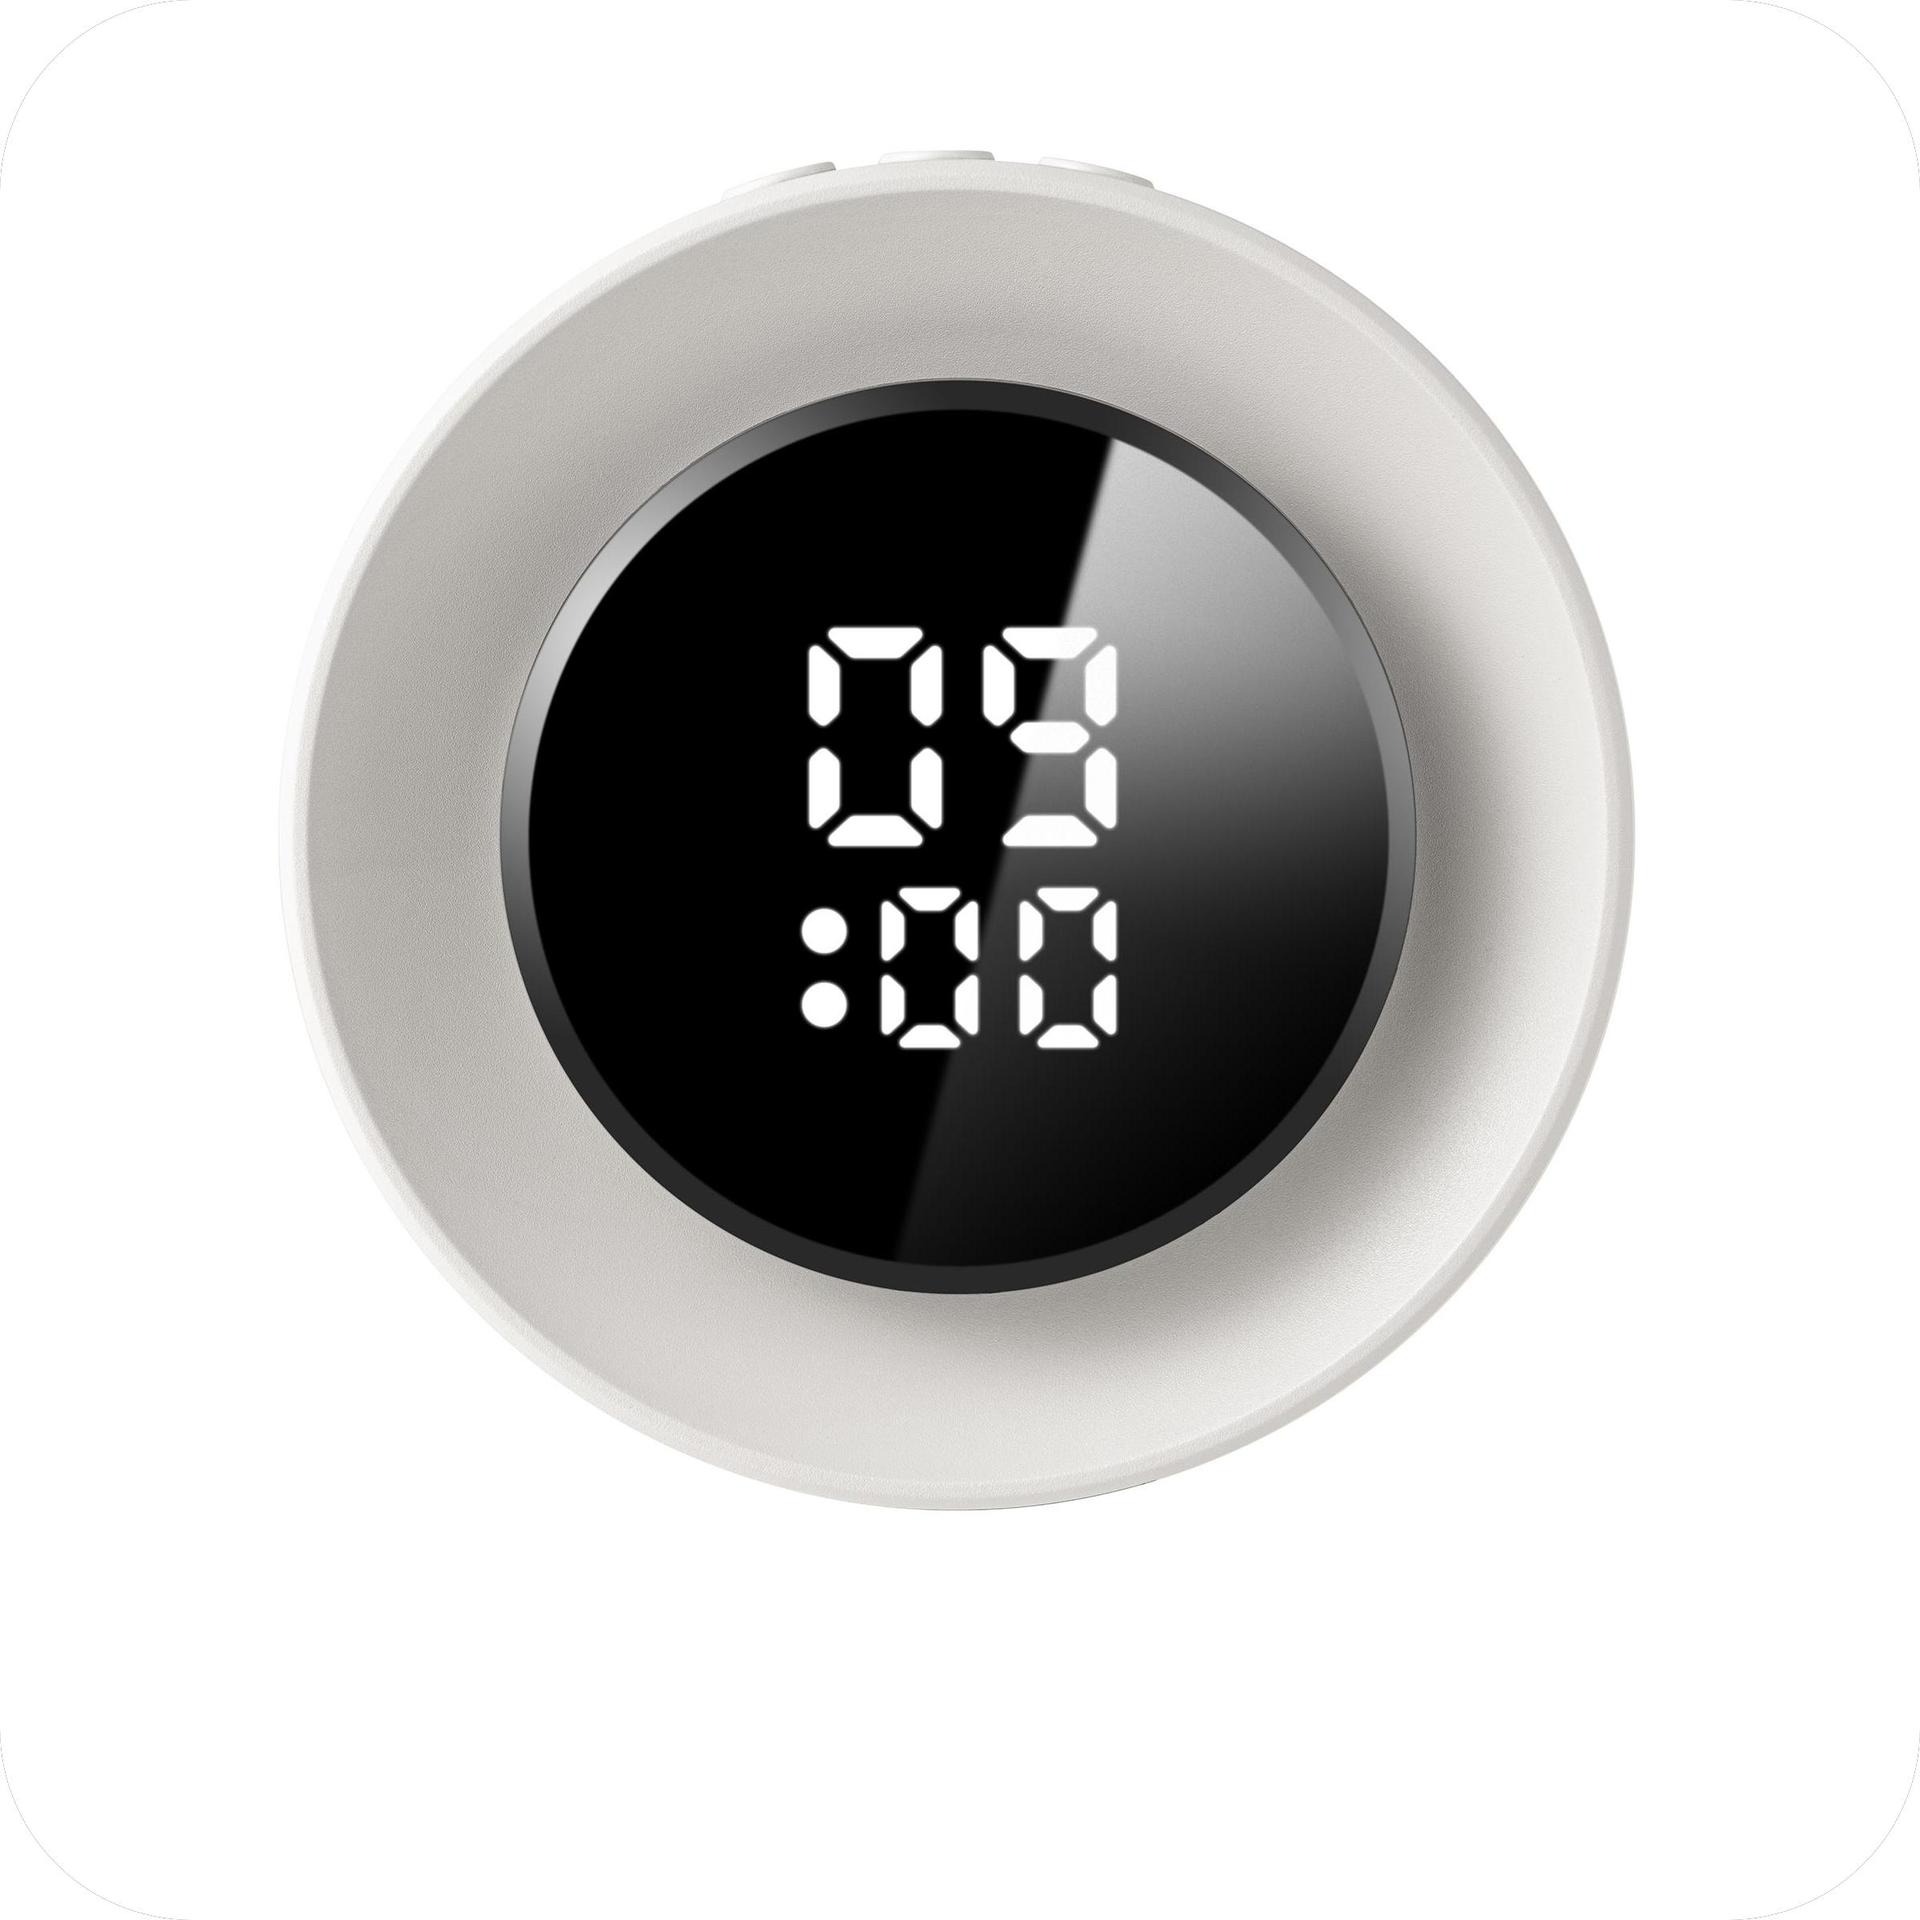 Đèn ngủ có đồng hồ xem giờ điều khiển từ xa với 3 chế độ chiếu sáng, điều chỉnh độ sáng 10 cấp độ ánh sáng bảo vệ mắt